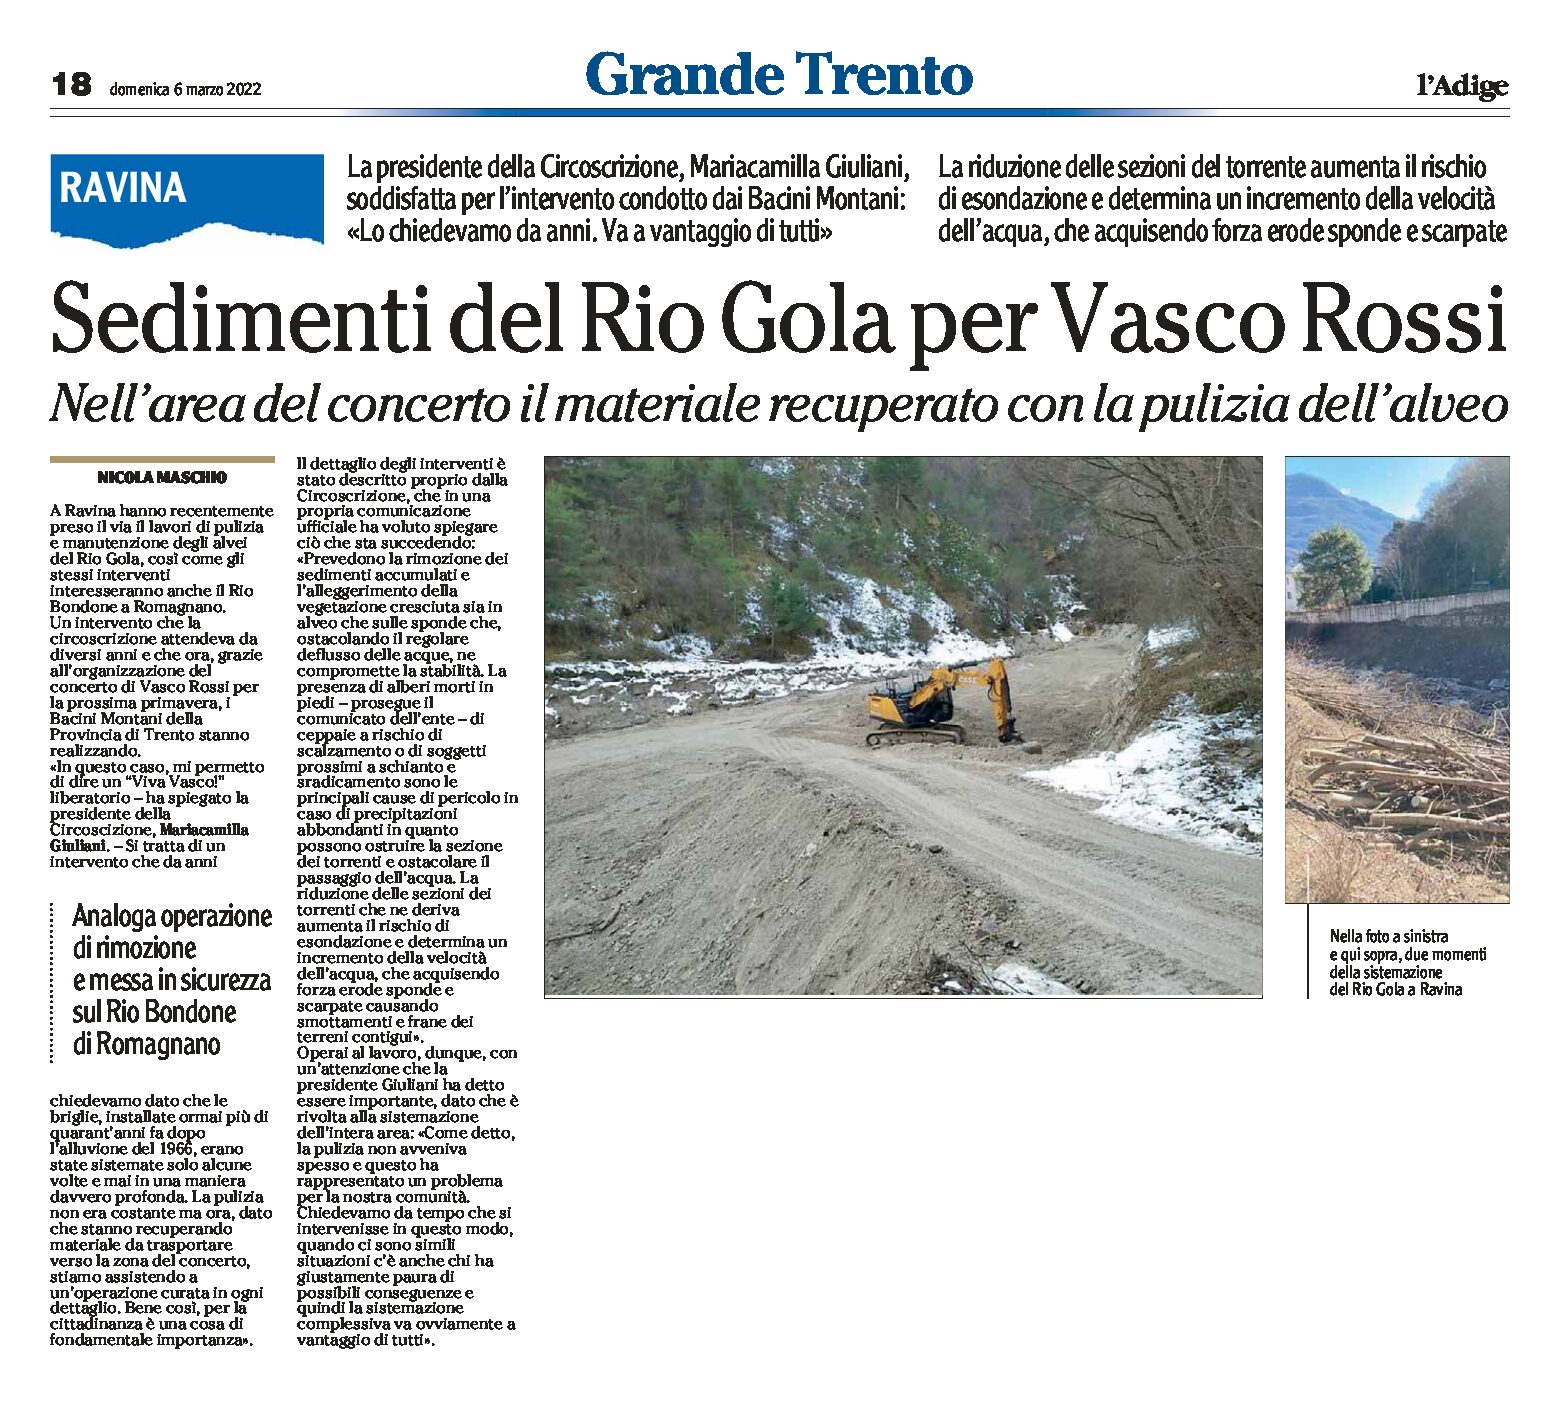 Ravina: sedimenti del Rio Gola per Vasco Rossi. Nell’area del concerto il materiale recuperato